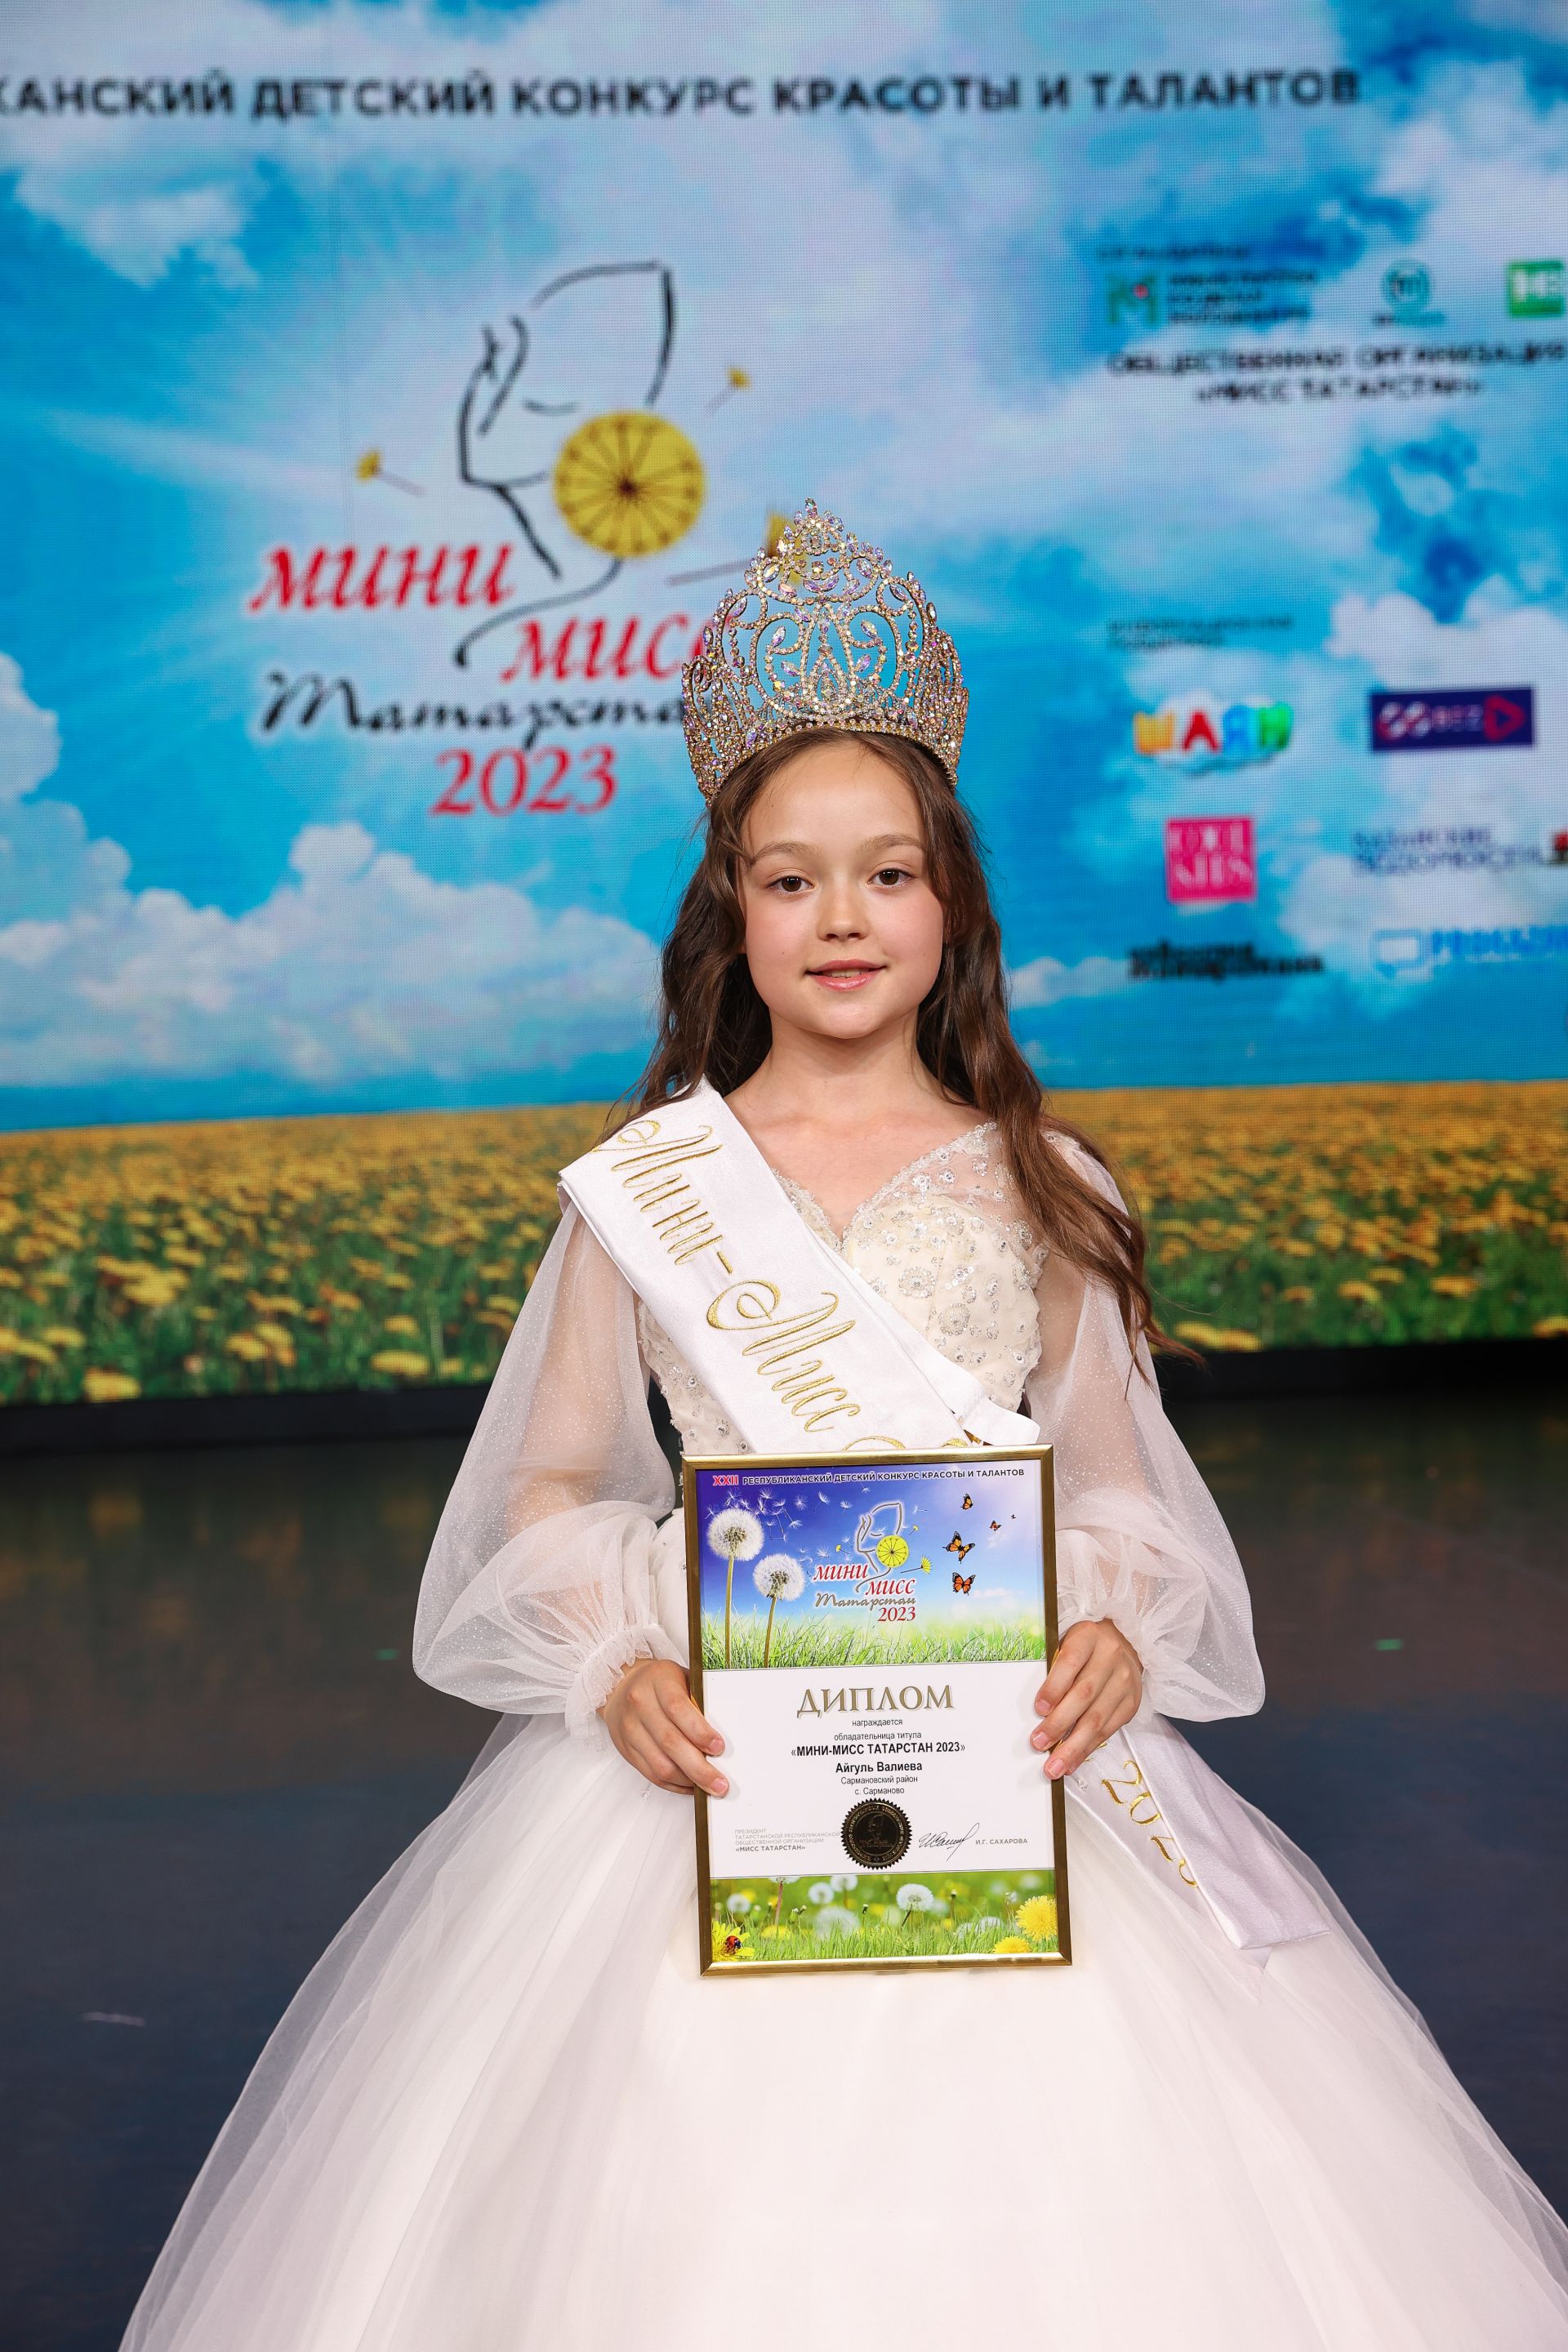 20 мая состоялся финал XXII Республиканского детского конкурса красоты и талантов «Мини-Мисс Татарстан - 2023»